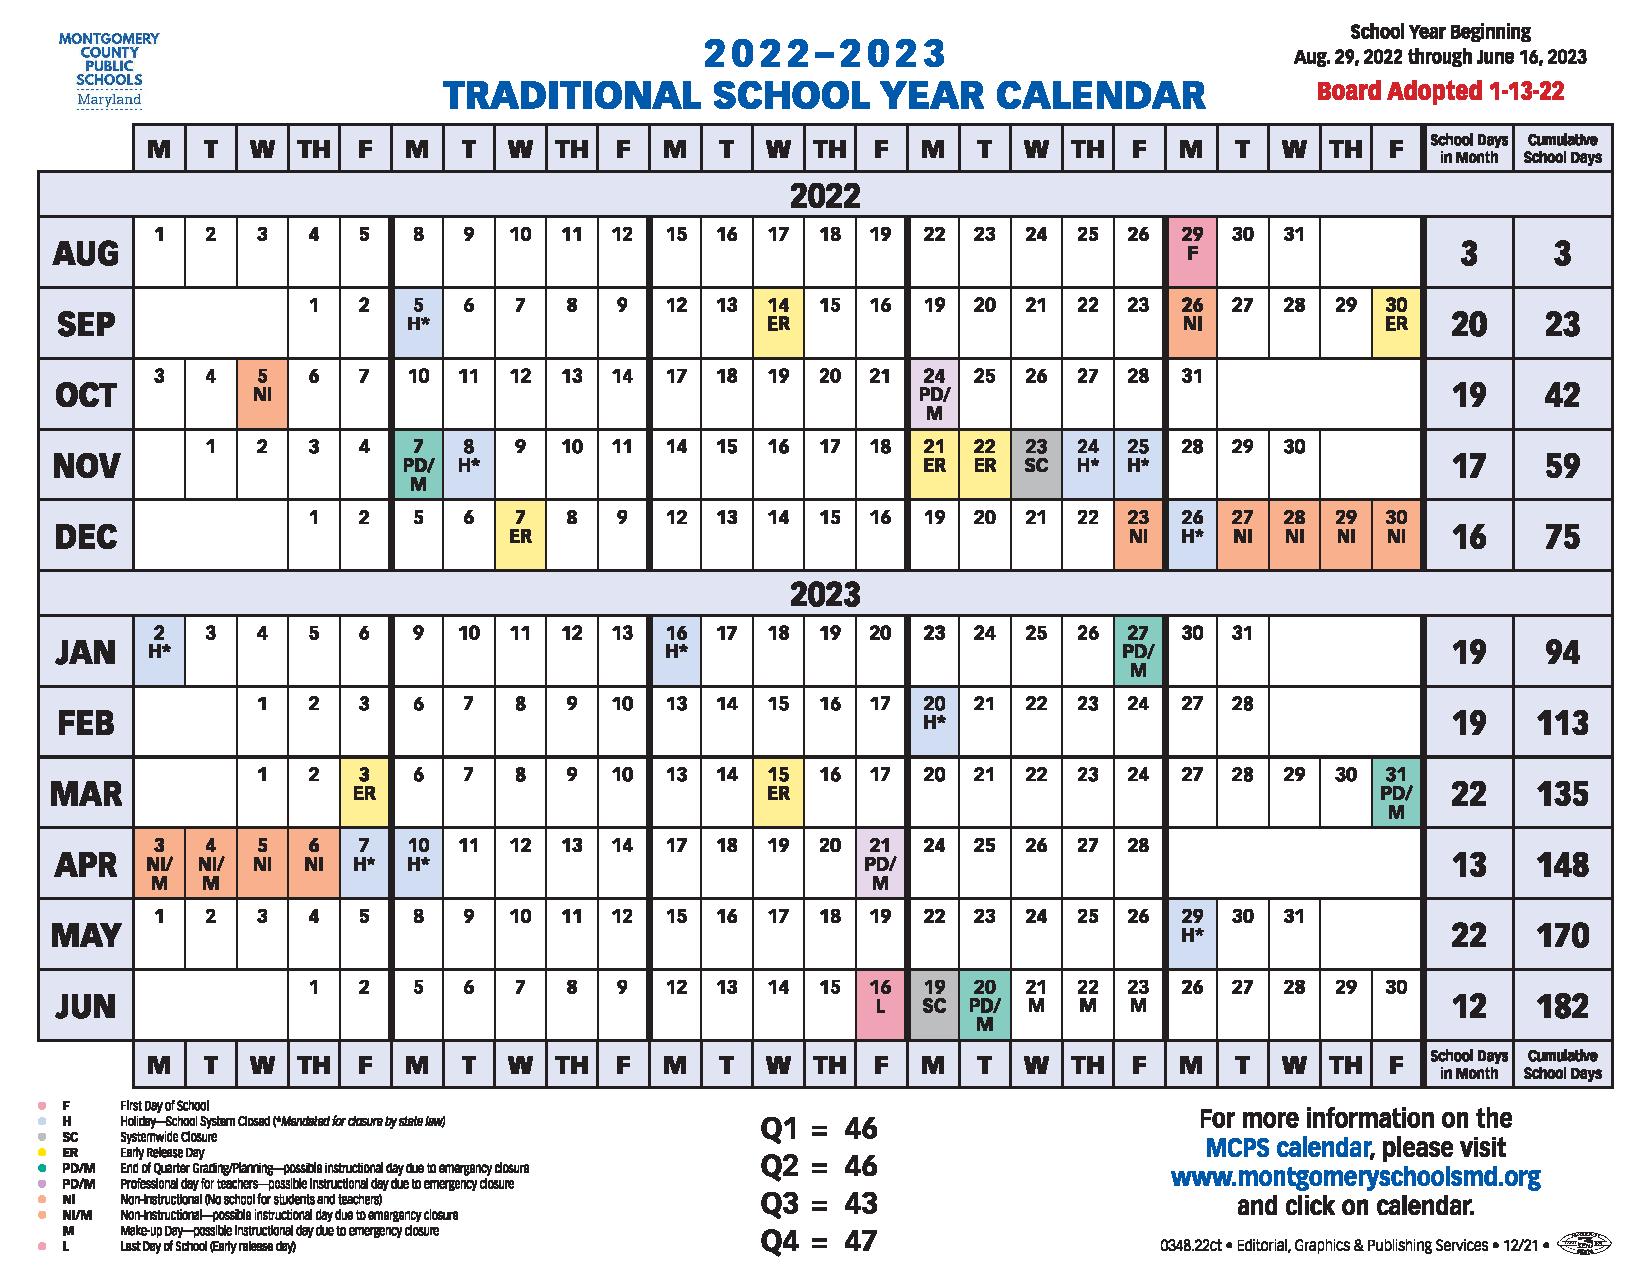 Montgomery County Schools Calendar 20222023 in PDF